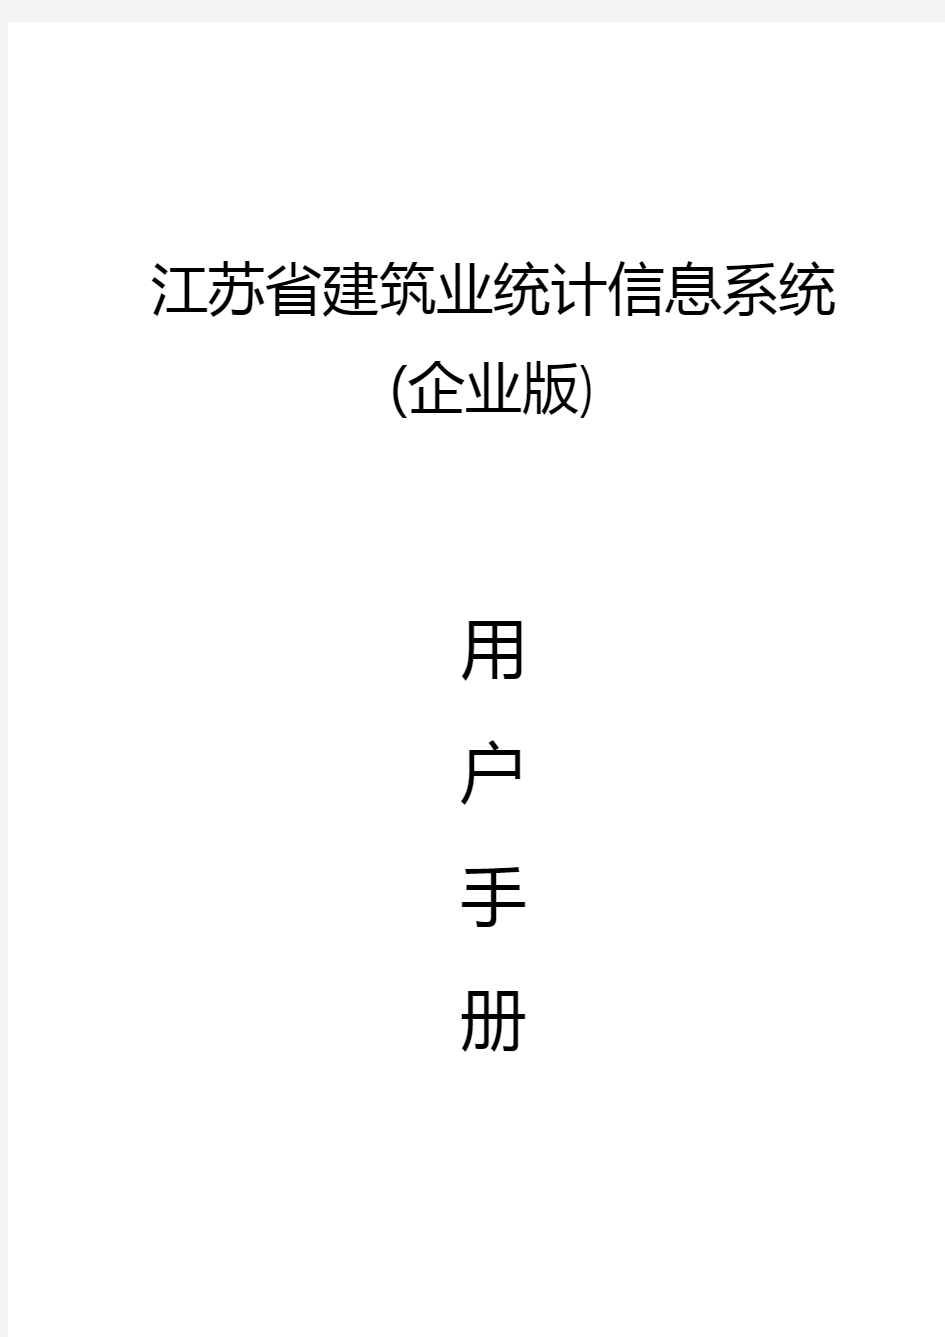 江苏省建筑业统计信息系统(企业版)用户手册